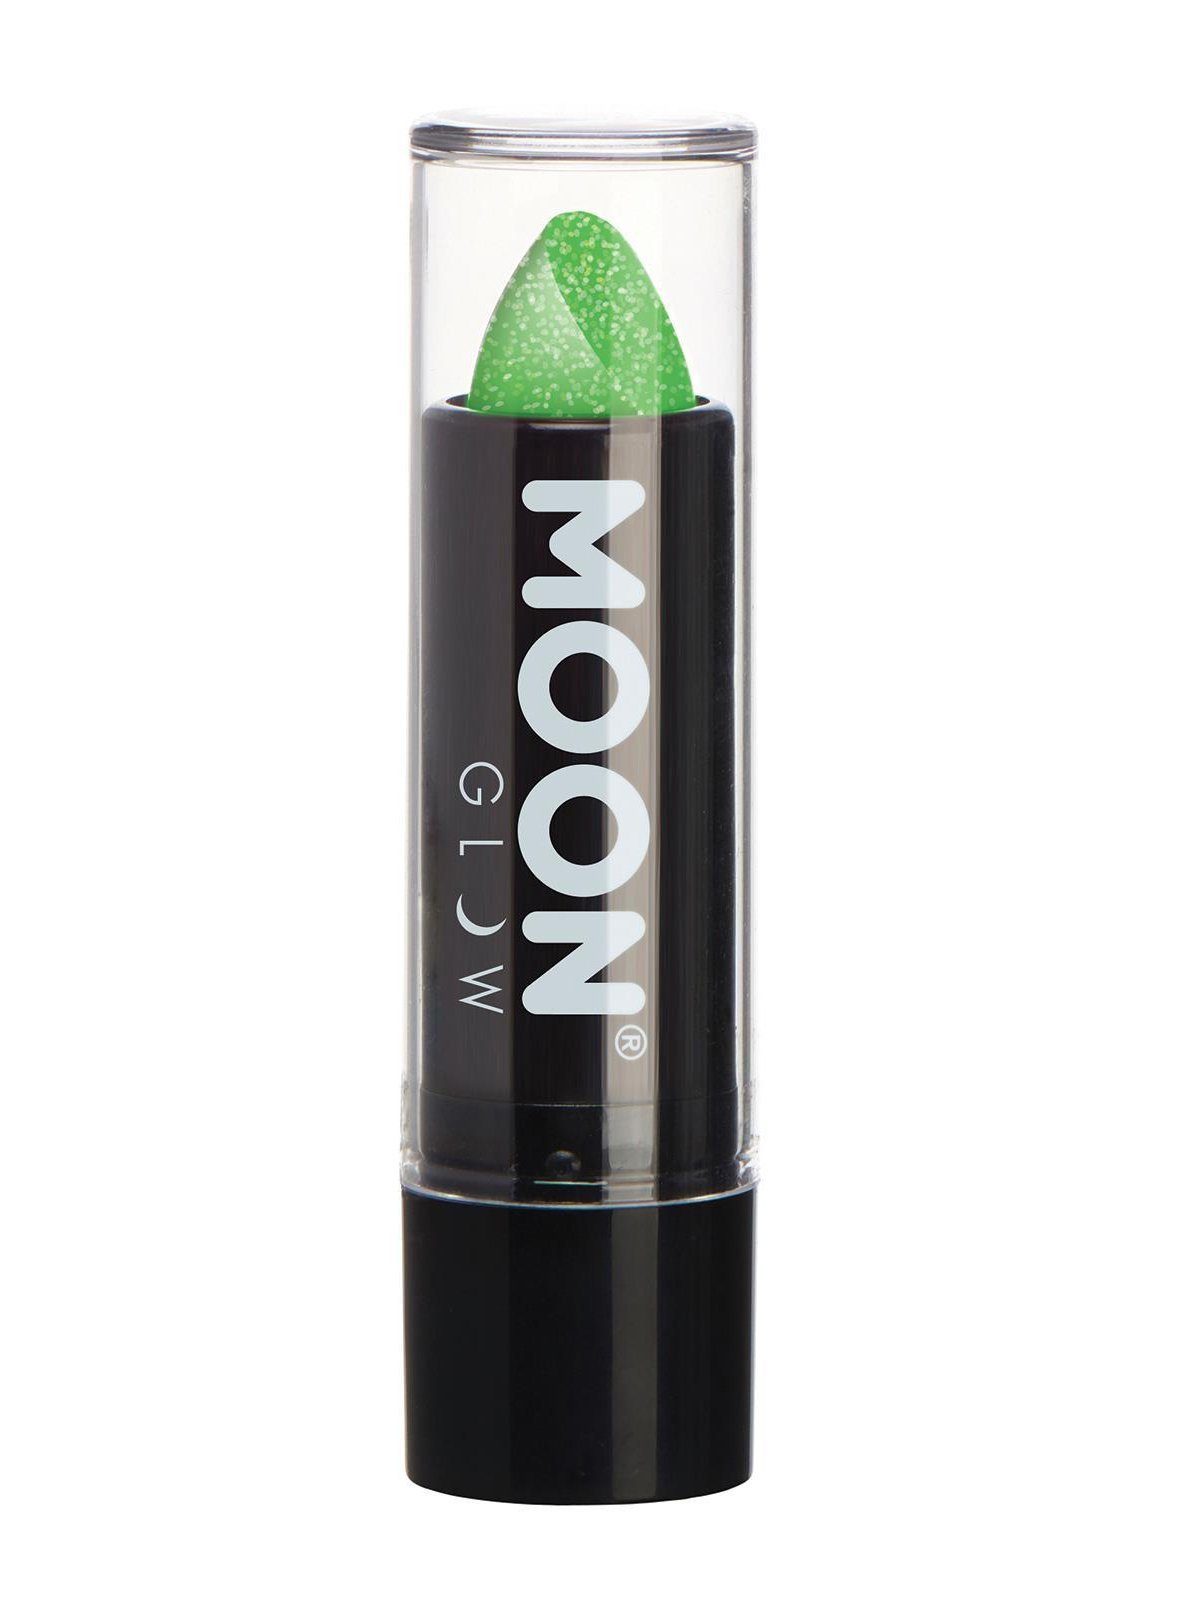 Smiffys Lippenstift Moon Glow Neon UV Glitzer Lippenstift grün, Glitzernder Neon-Lippenstift für einen aufregenden Look zu Fasching o